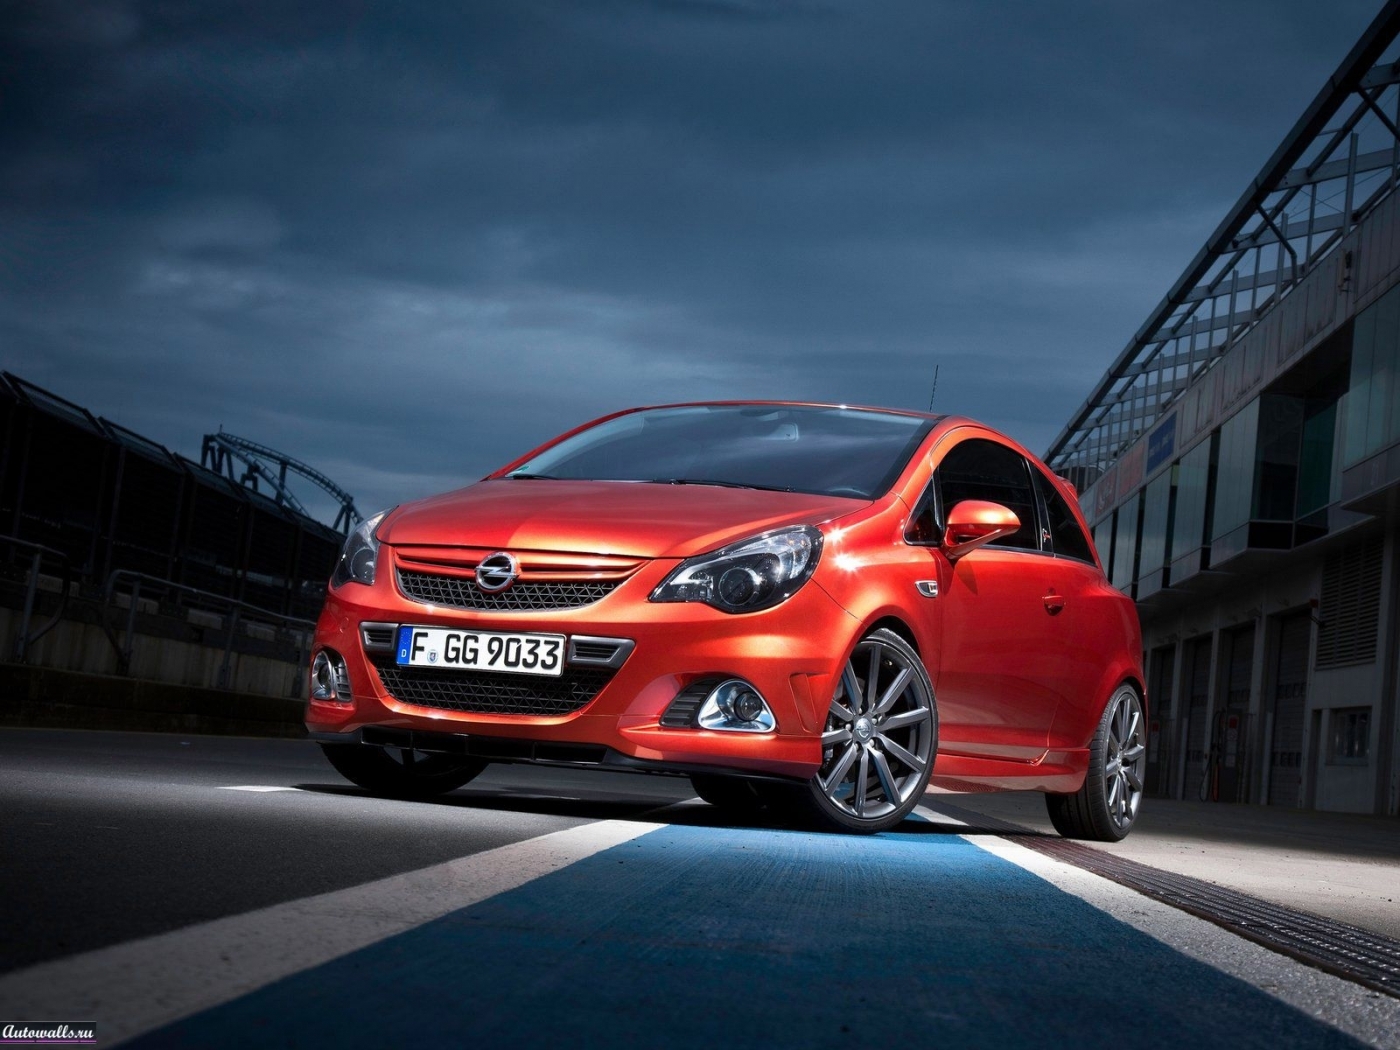 Скачать картинку Машины, Опель (Opel), Транспорт в телефон бесплатно.